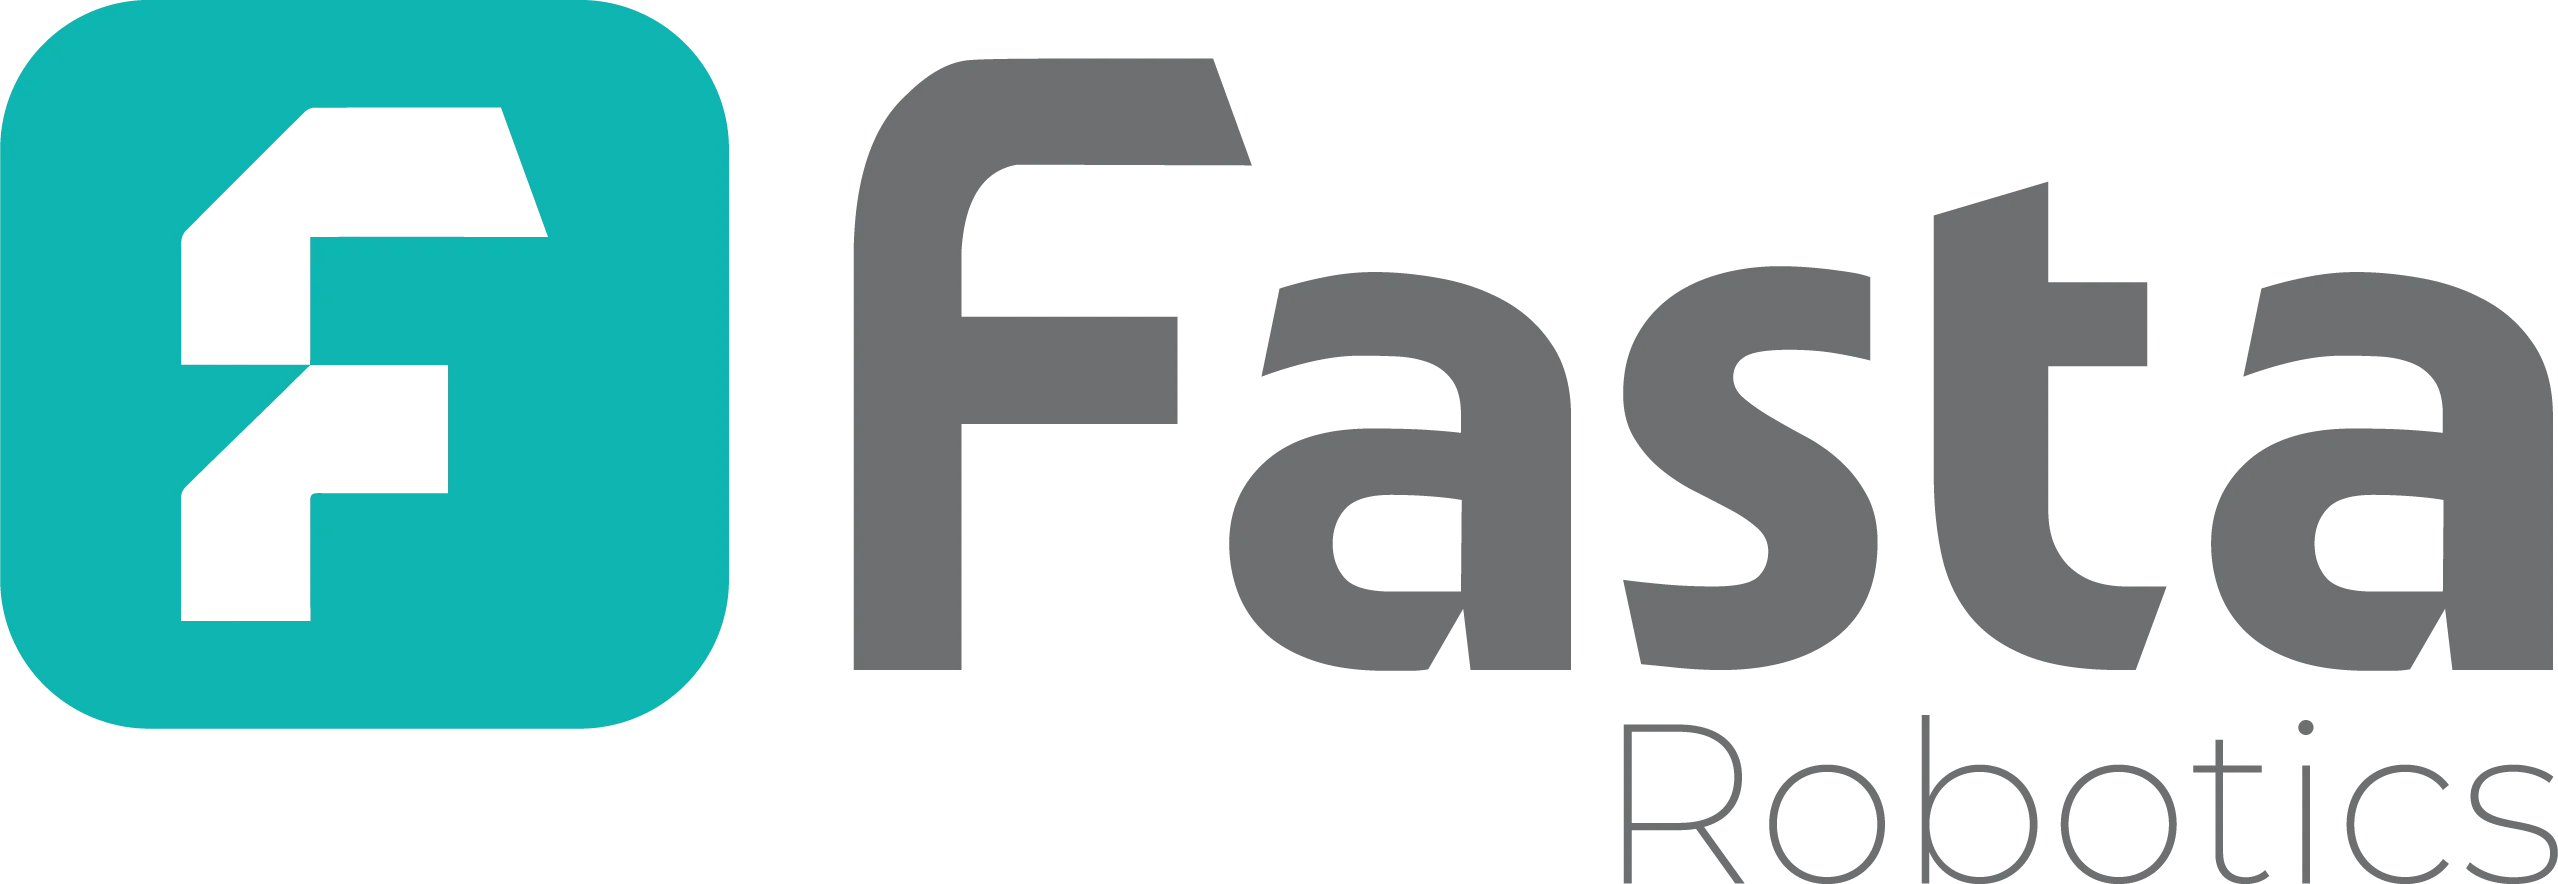 Fasta Robotics Logo - English Version